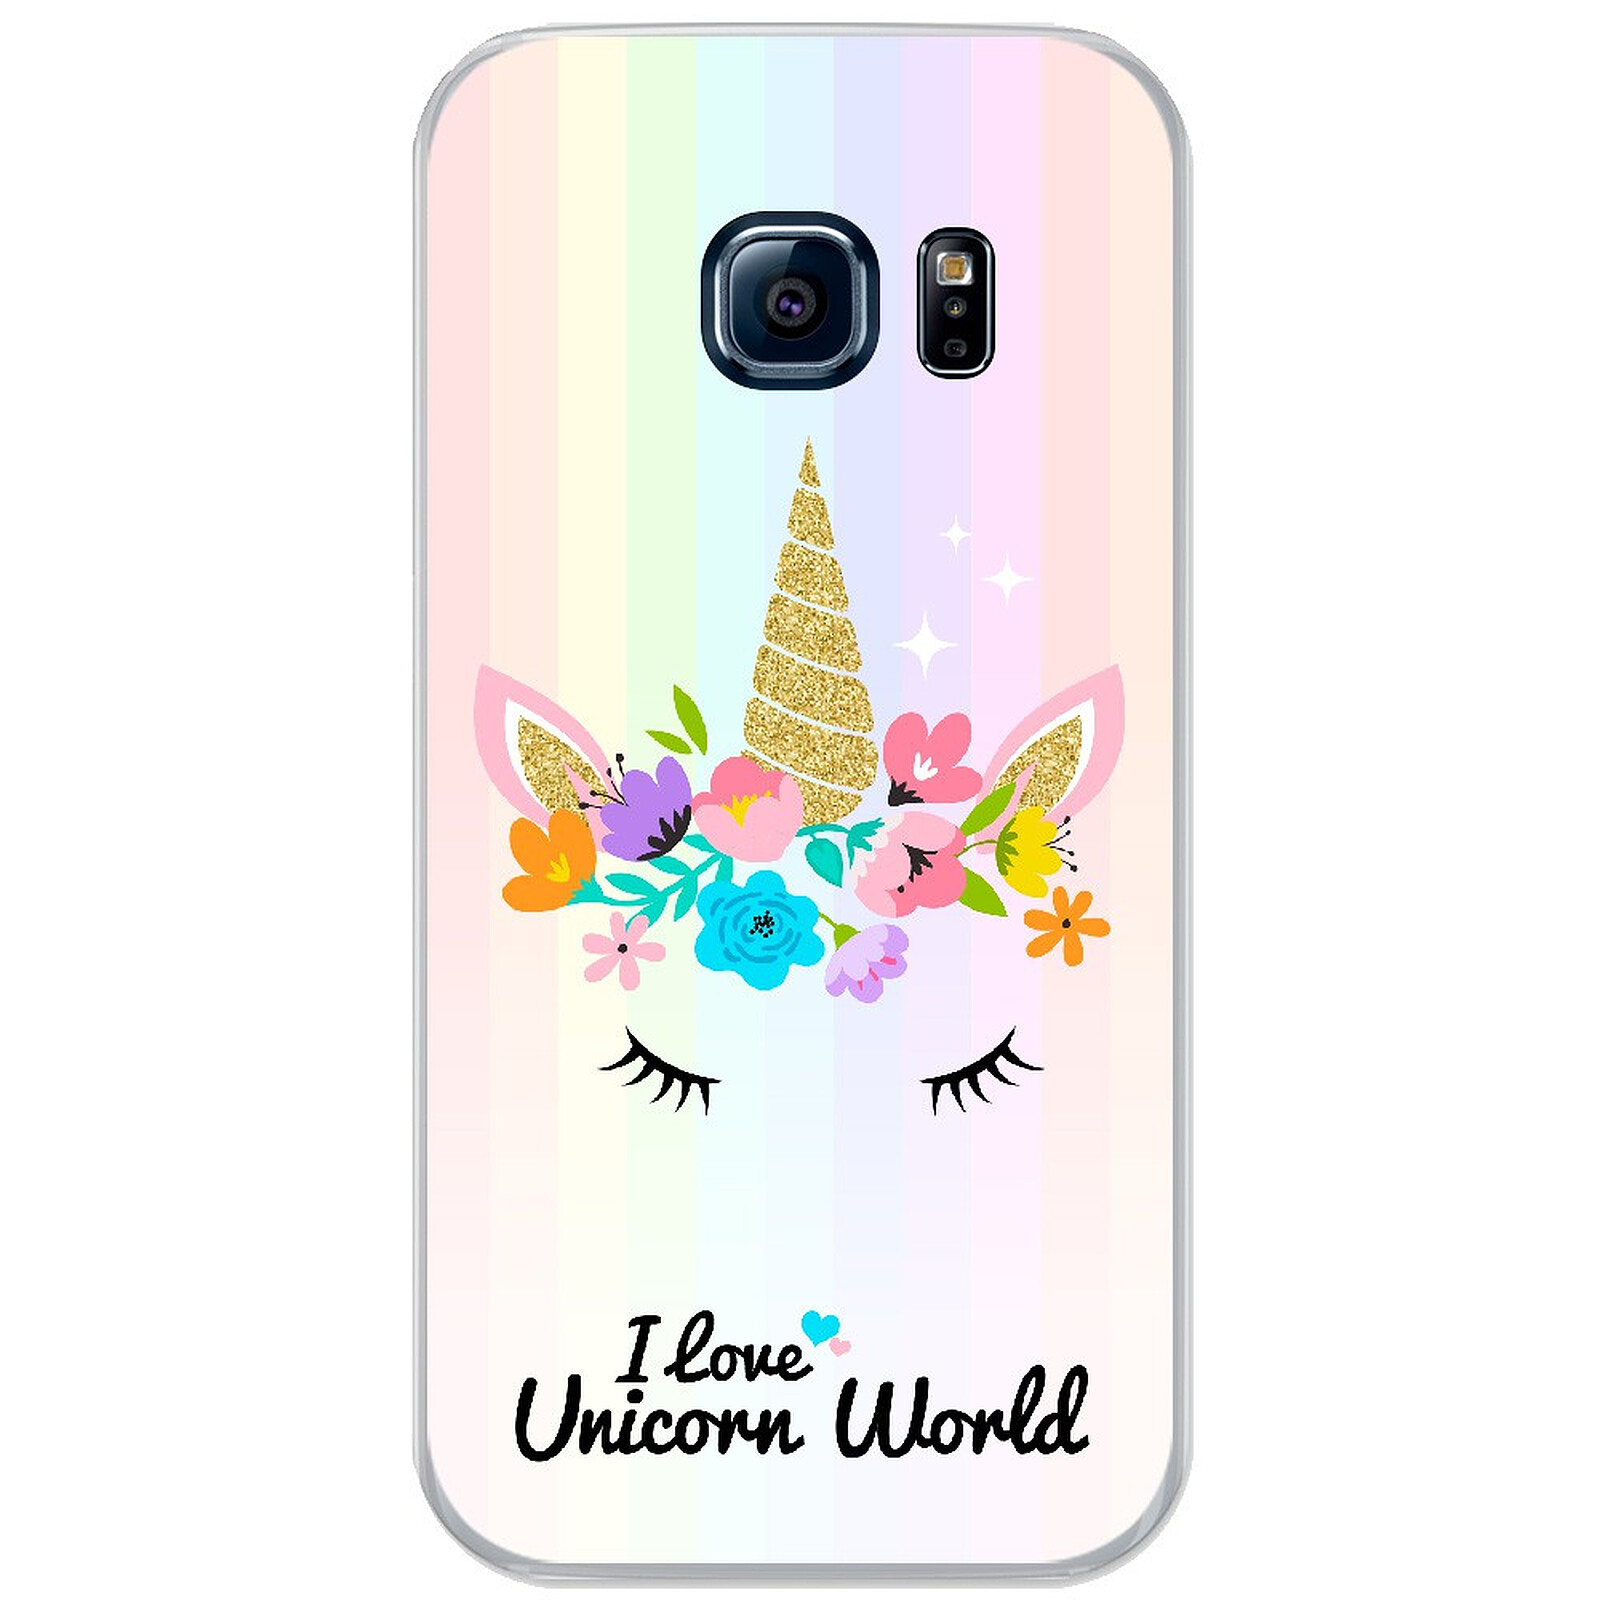 1001 Coques Coque silicone gel Samsung Galaxy S7 Edge motif Unicorn World - Coque téléphone 1001Coques sur LDLC